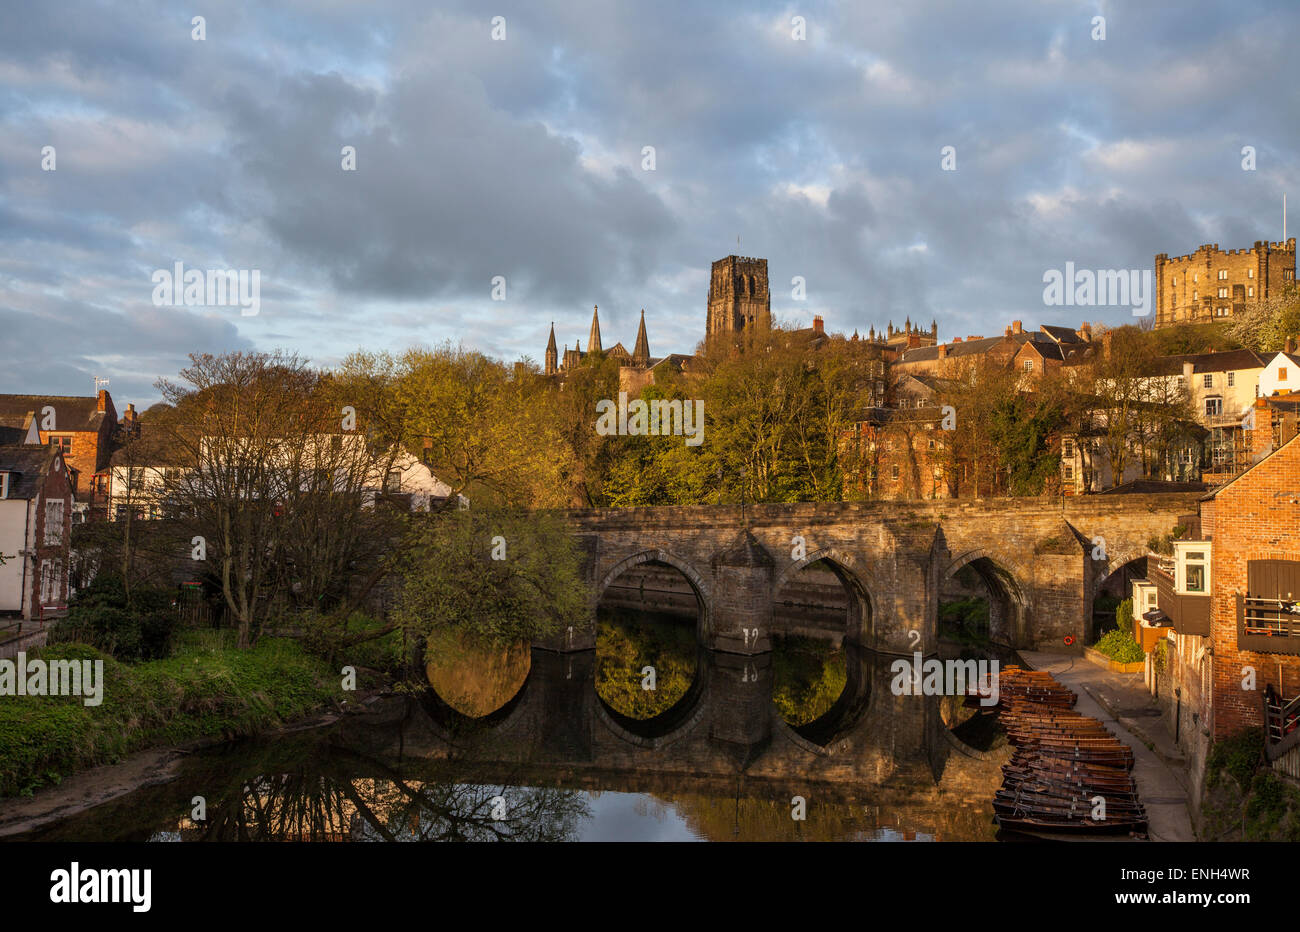 Elvet Puente sobre el río de la ciudad de Durham desgaste con la catedral de Durham en el fondo Foto de stock